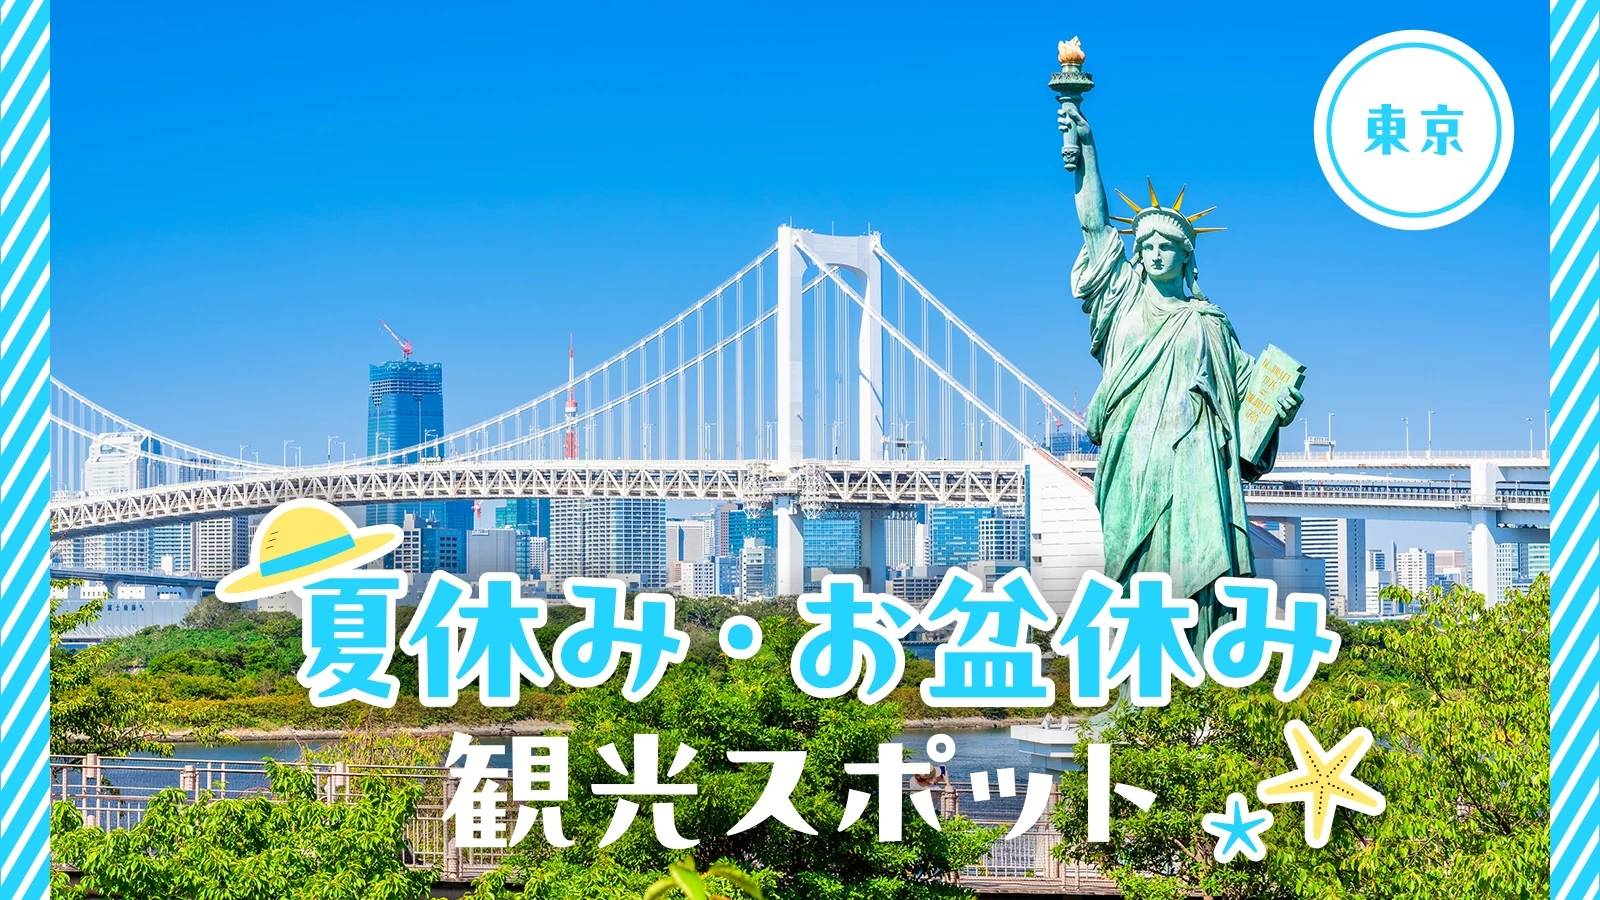 【東京】夏休み・お盆休みに訪れたい観光スポット36選 お台場の人気スポットも紹介